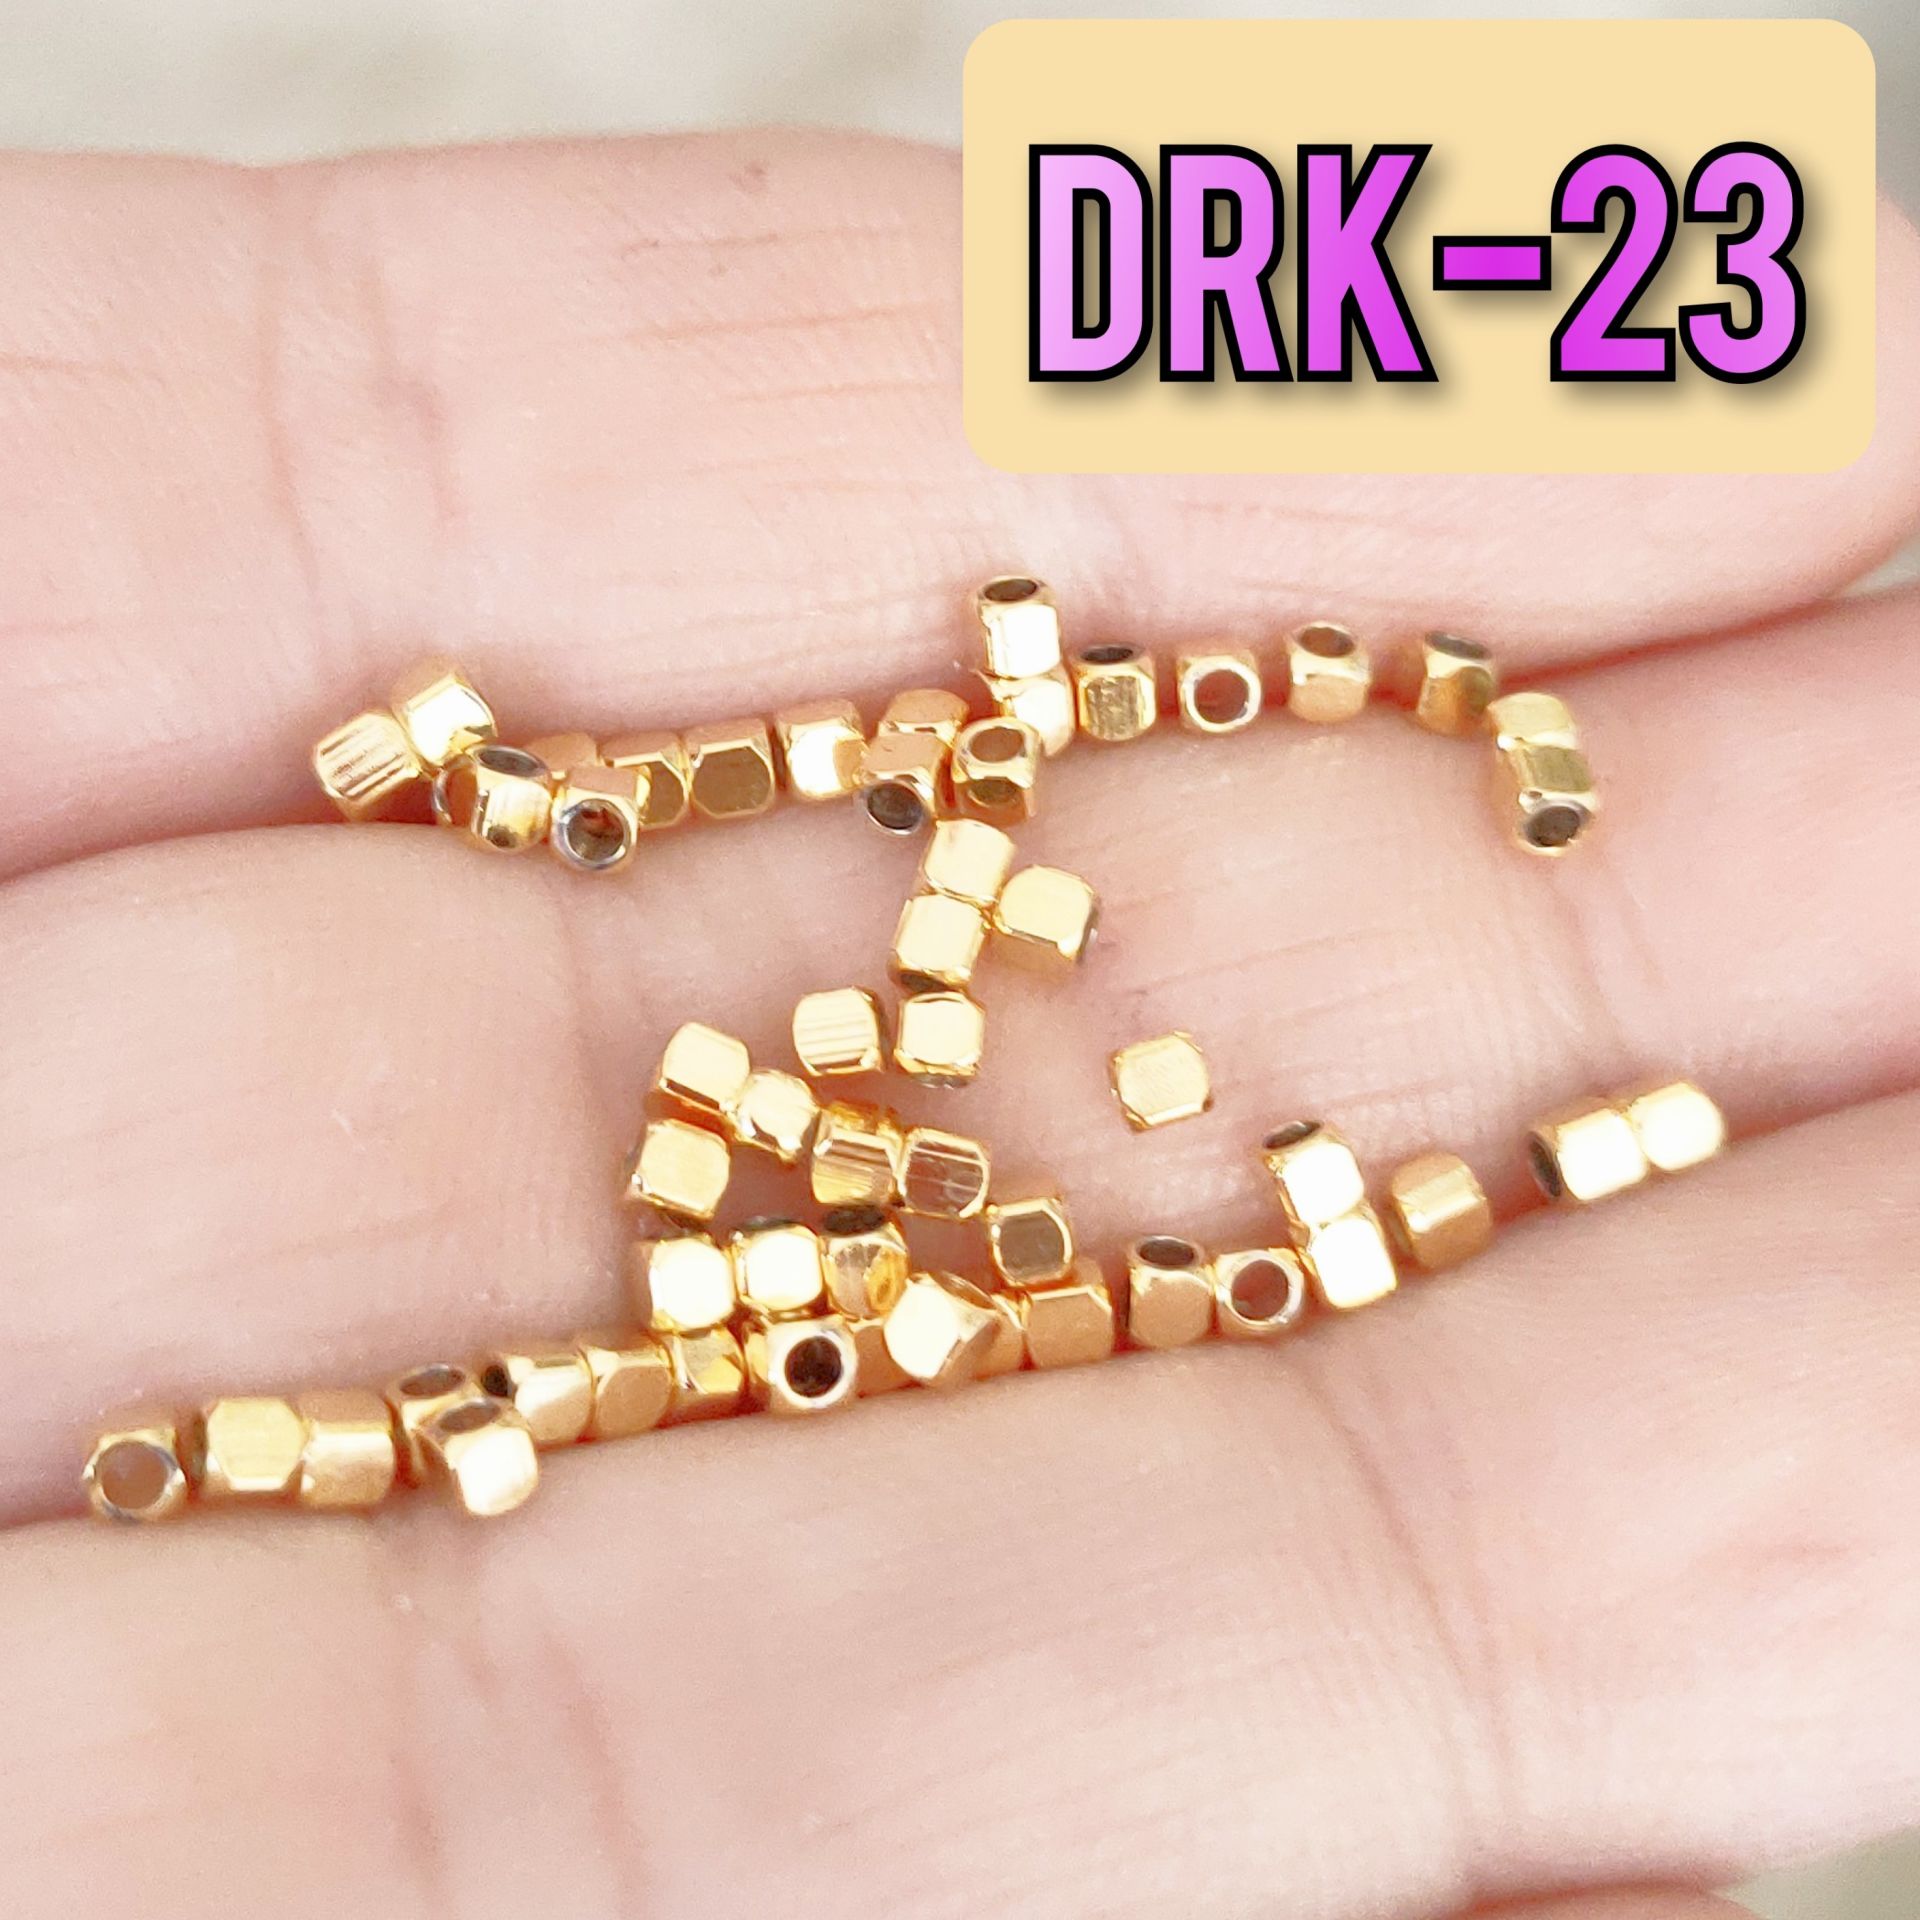 DRK-23 Altın Kaplama Küp Dorika Boncuk 2 mm